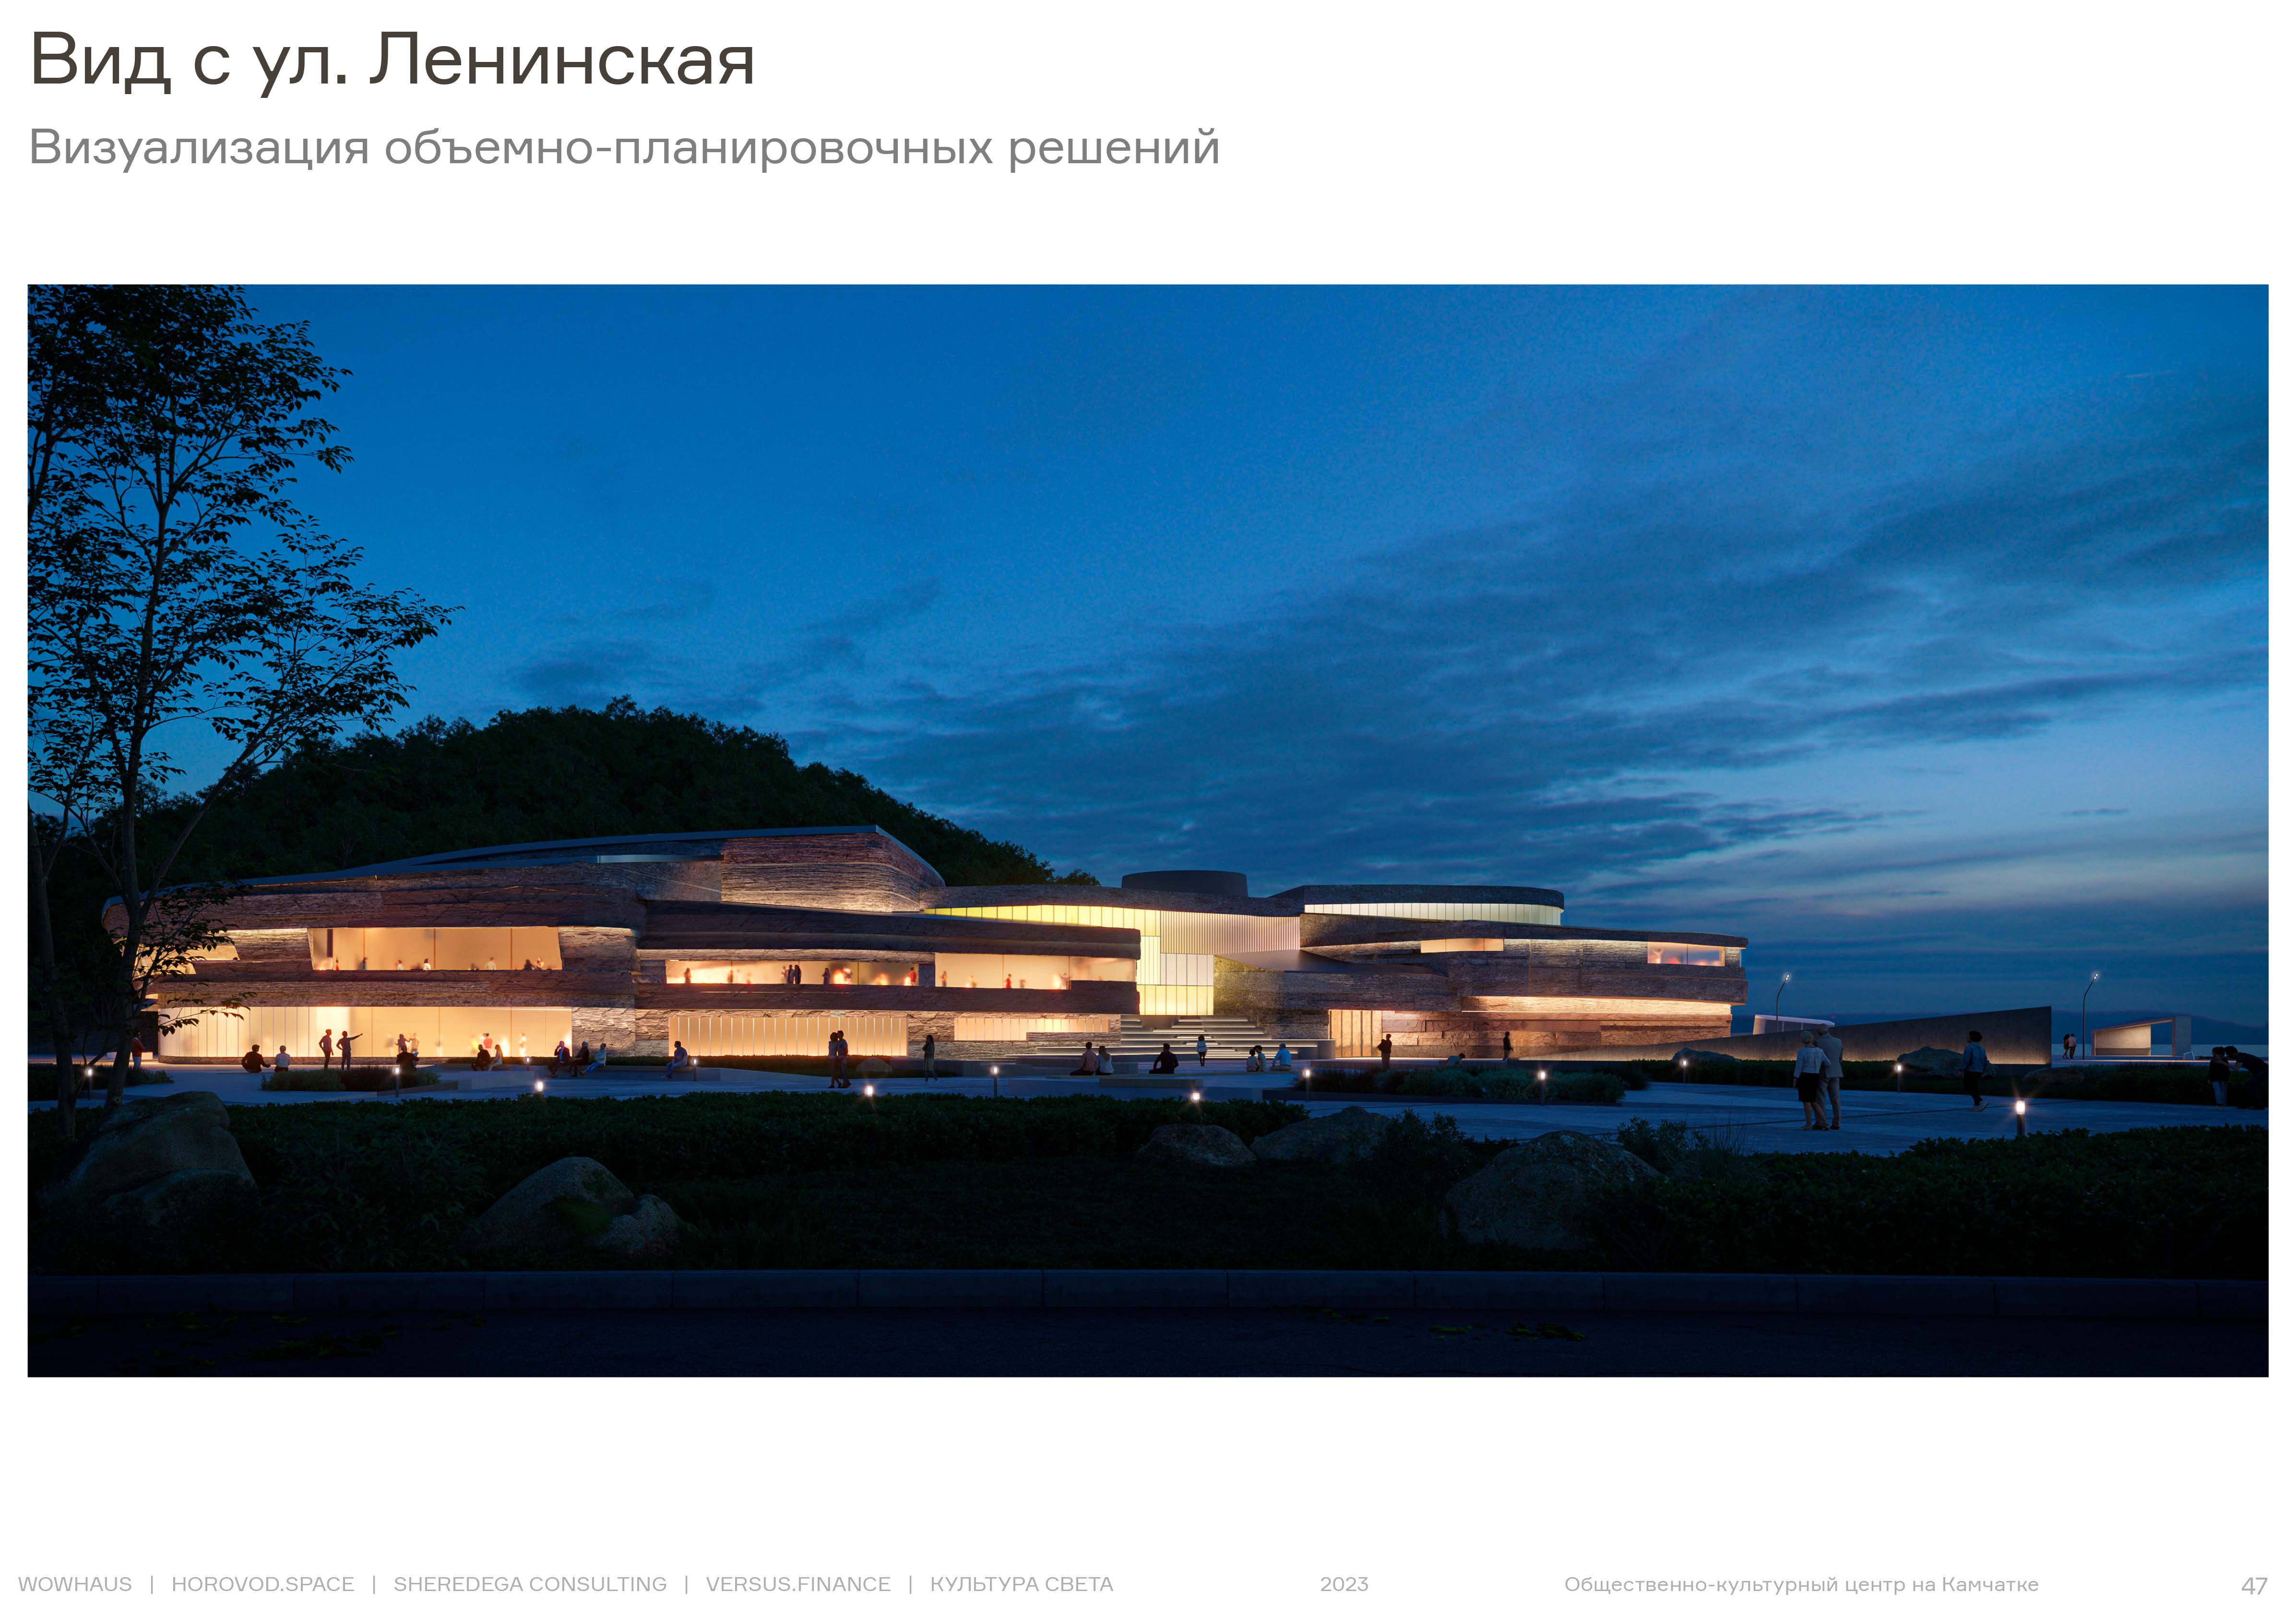 Архитектурное бюро Wowhaus будет проектировать общественно-культурный центр в столице Камчатки